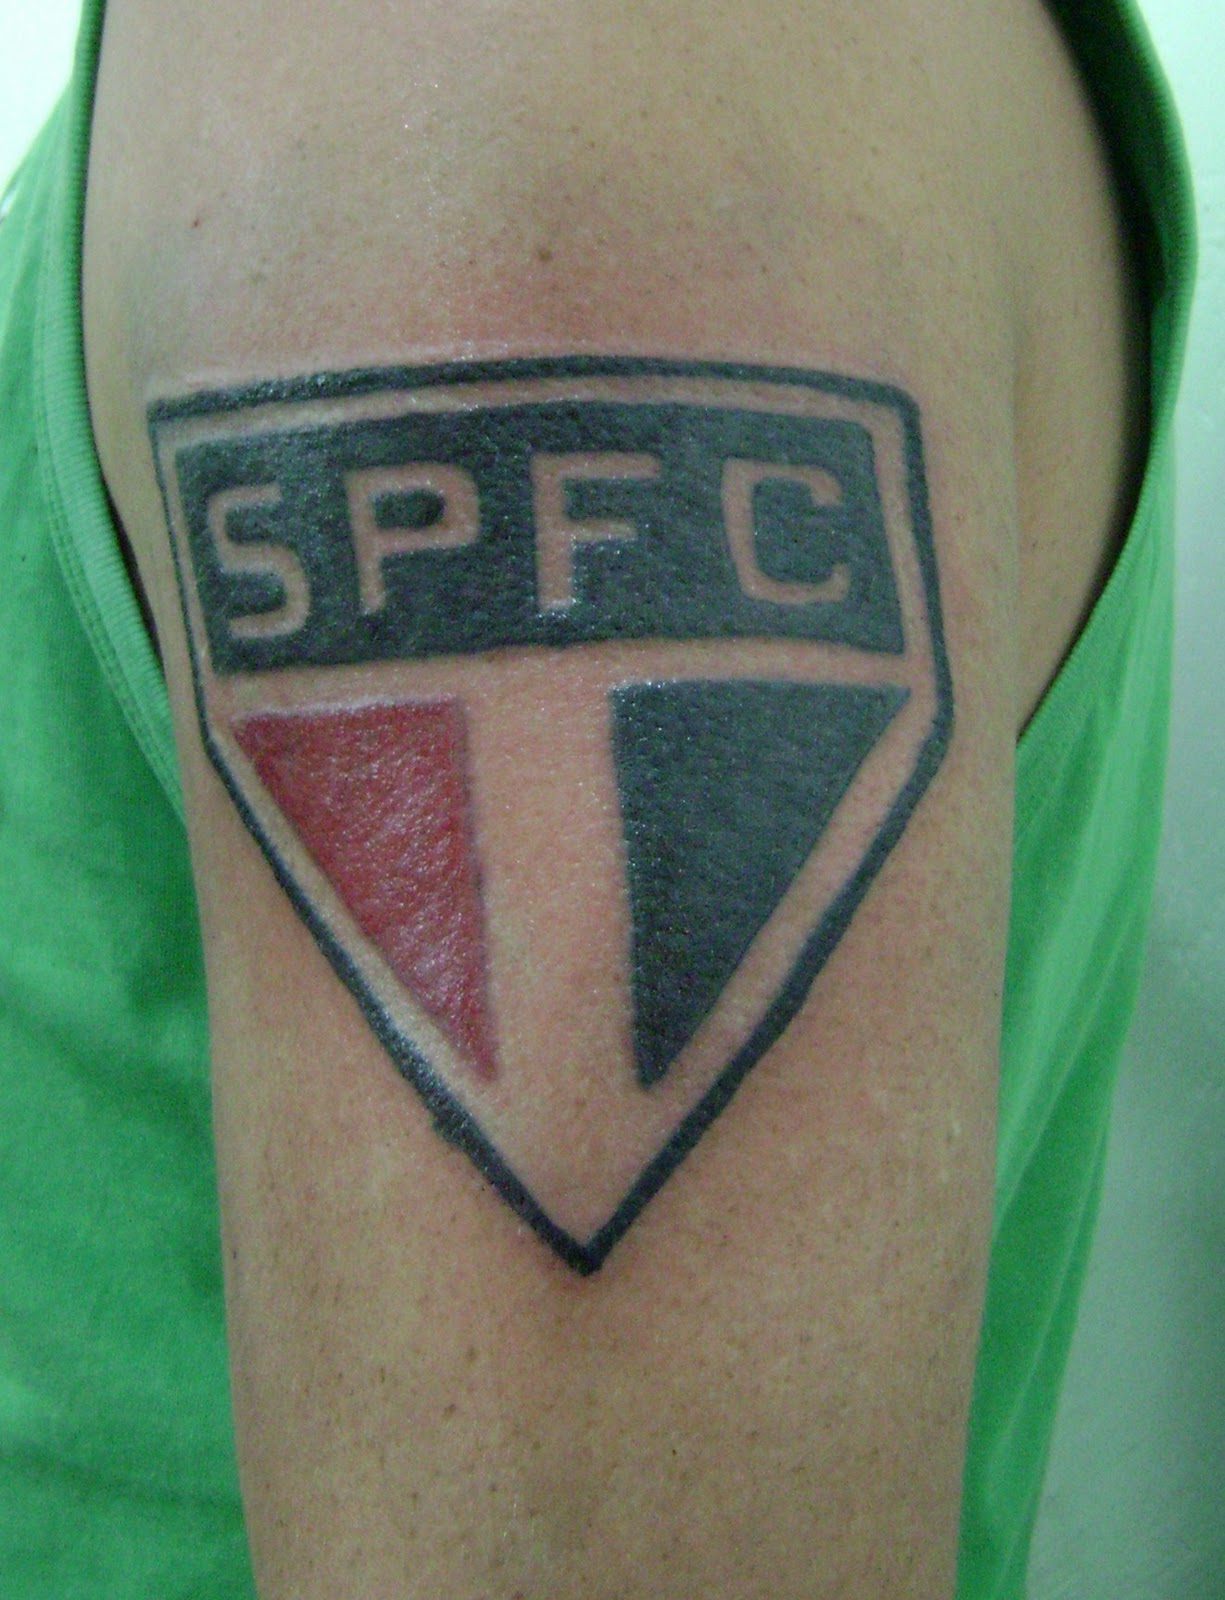 Fabiano tatuagem Tattoo escudo do Sao Paulo